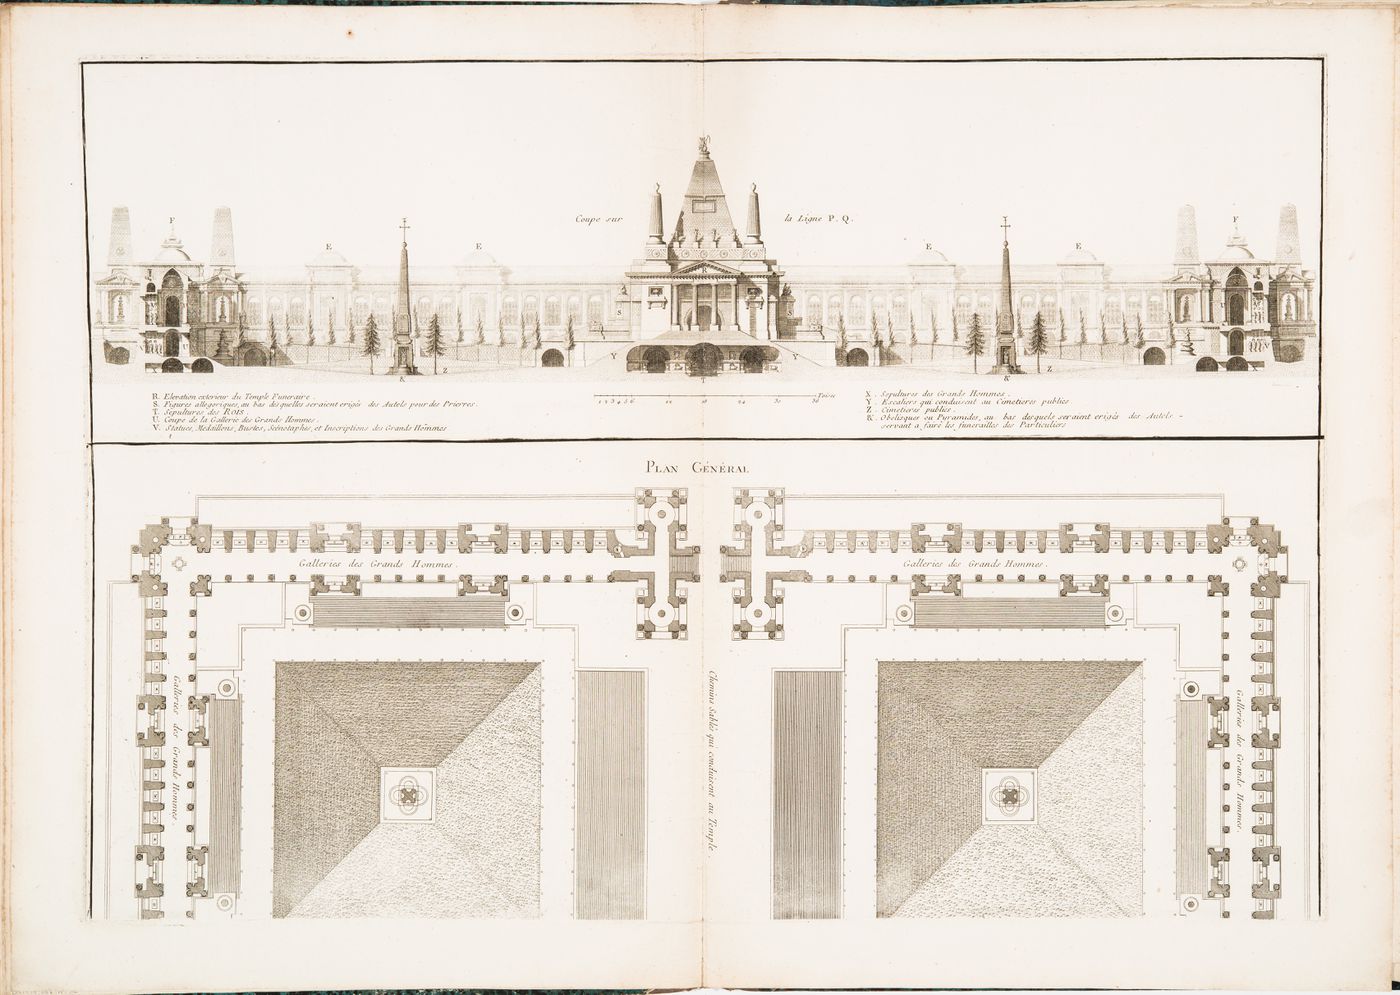 Design by Louis Jean Desprez for a funerary temple in honour of "les cendres des rois et les grands hommes": Sectional elevation and partial plan